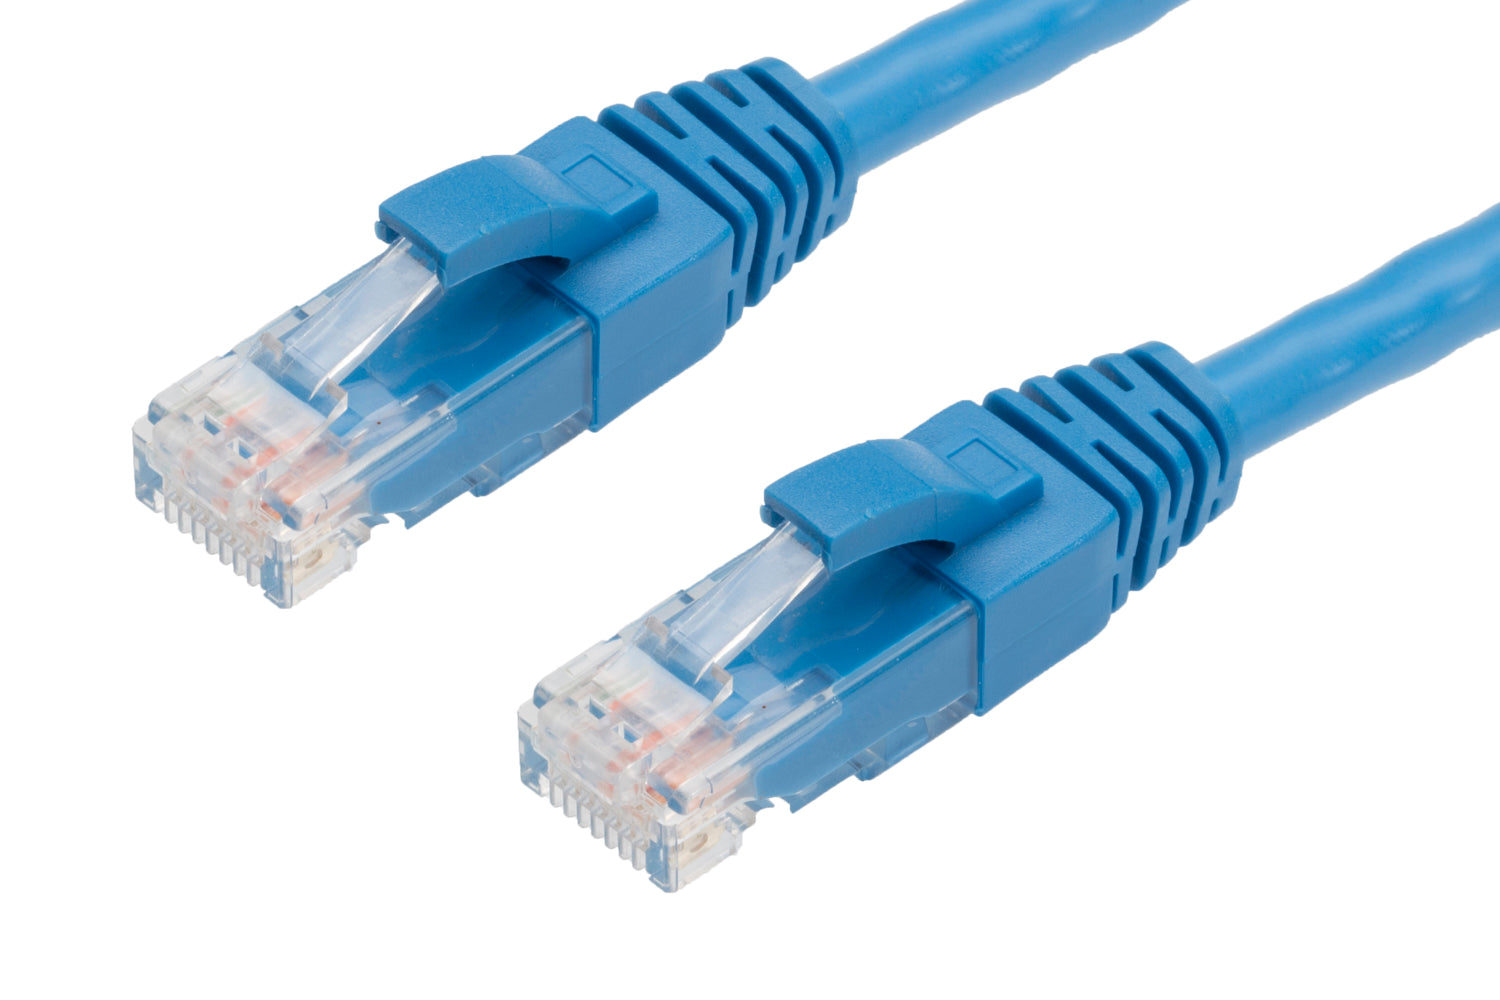 50m RJ45 CAT6 Ethernet Cable. Blue Deals499